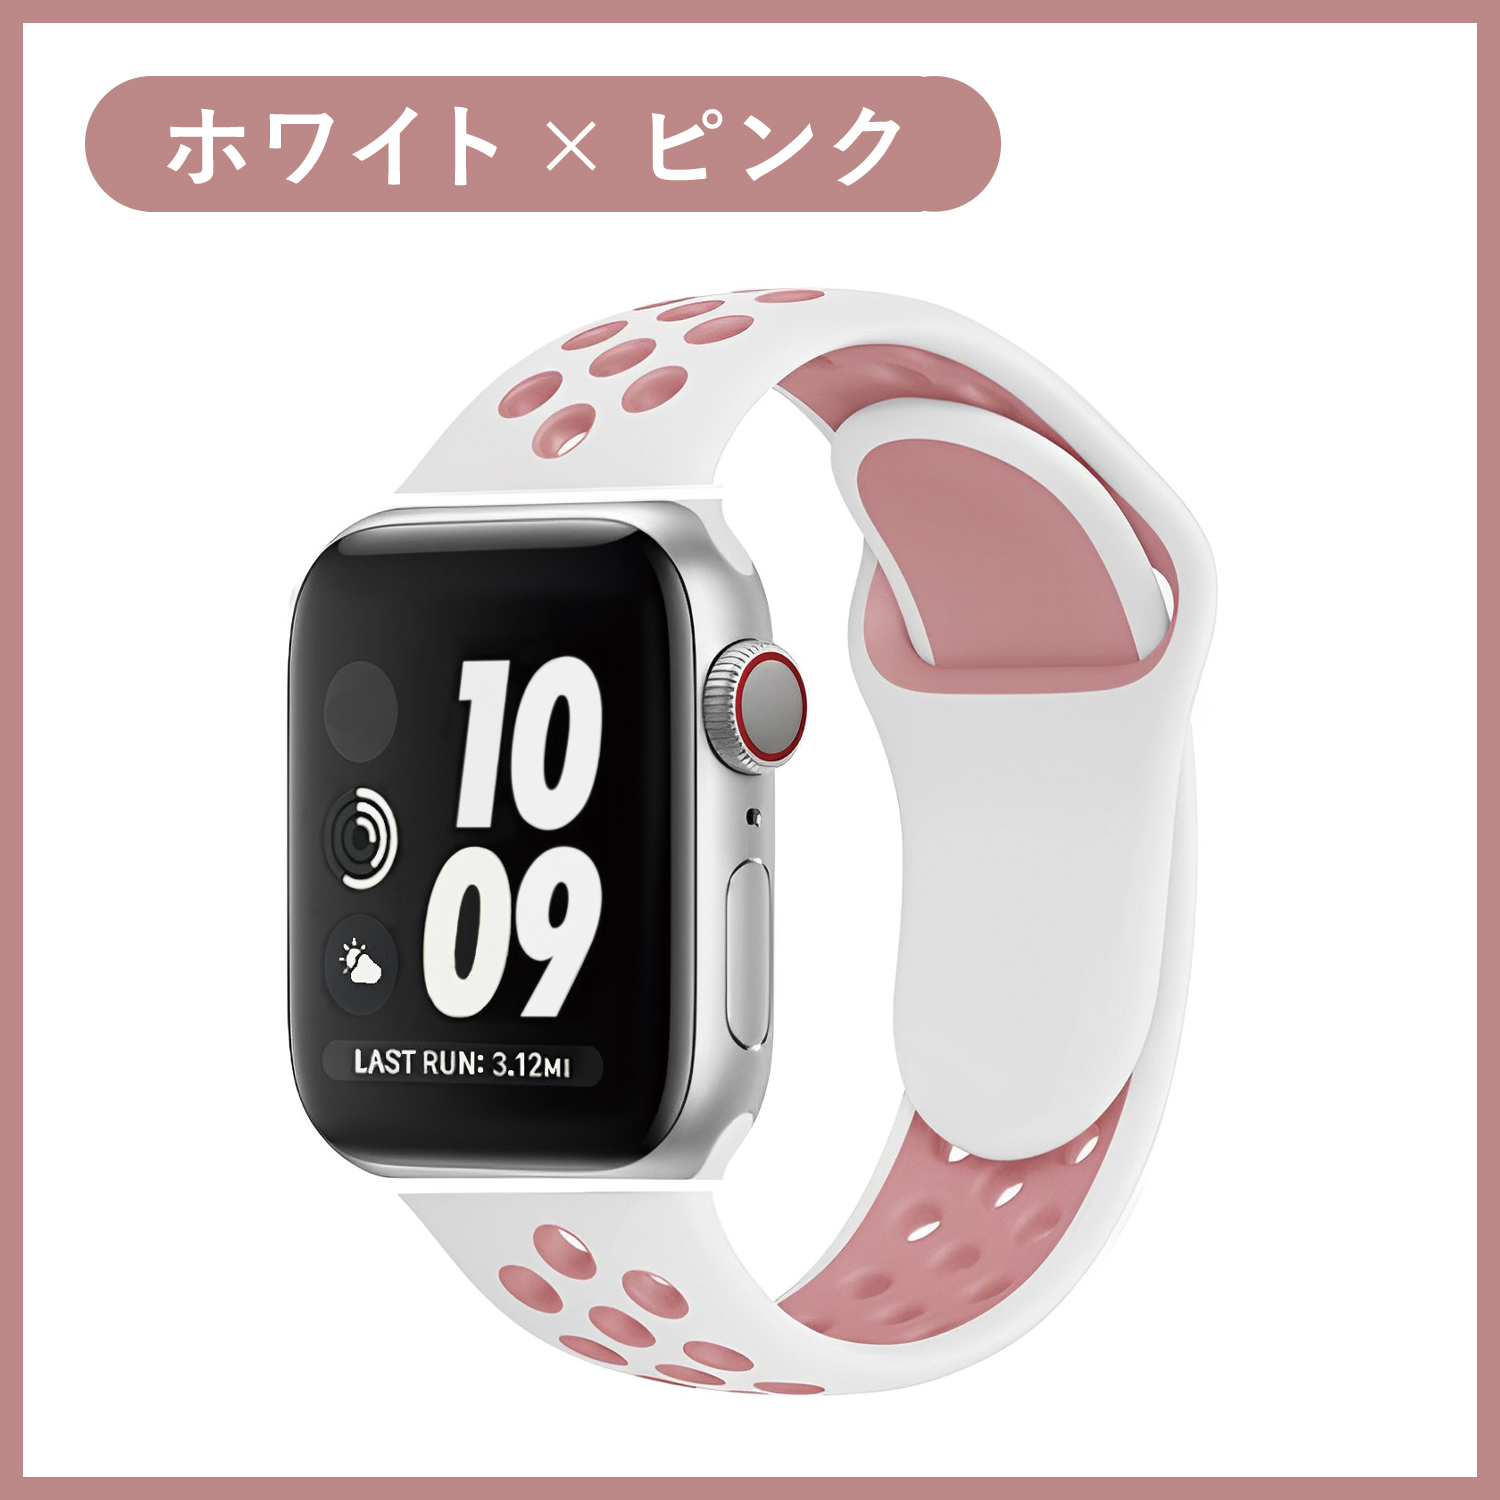 新品 Apple Watch 41㎜用純正NIKEスポーツバンド オリーブグレー 